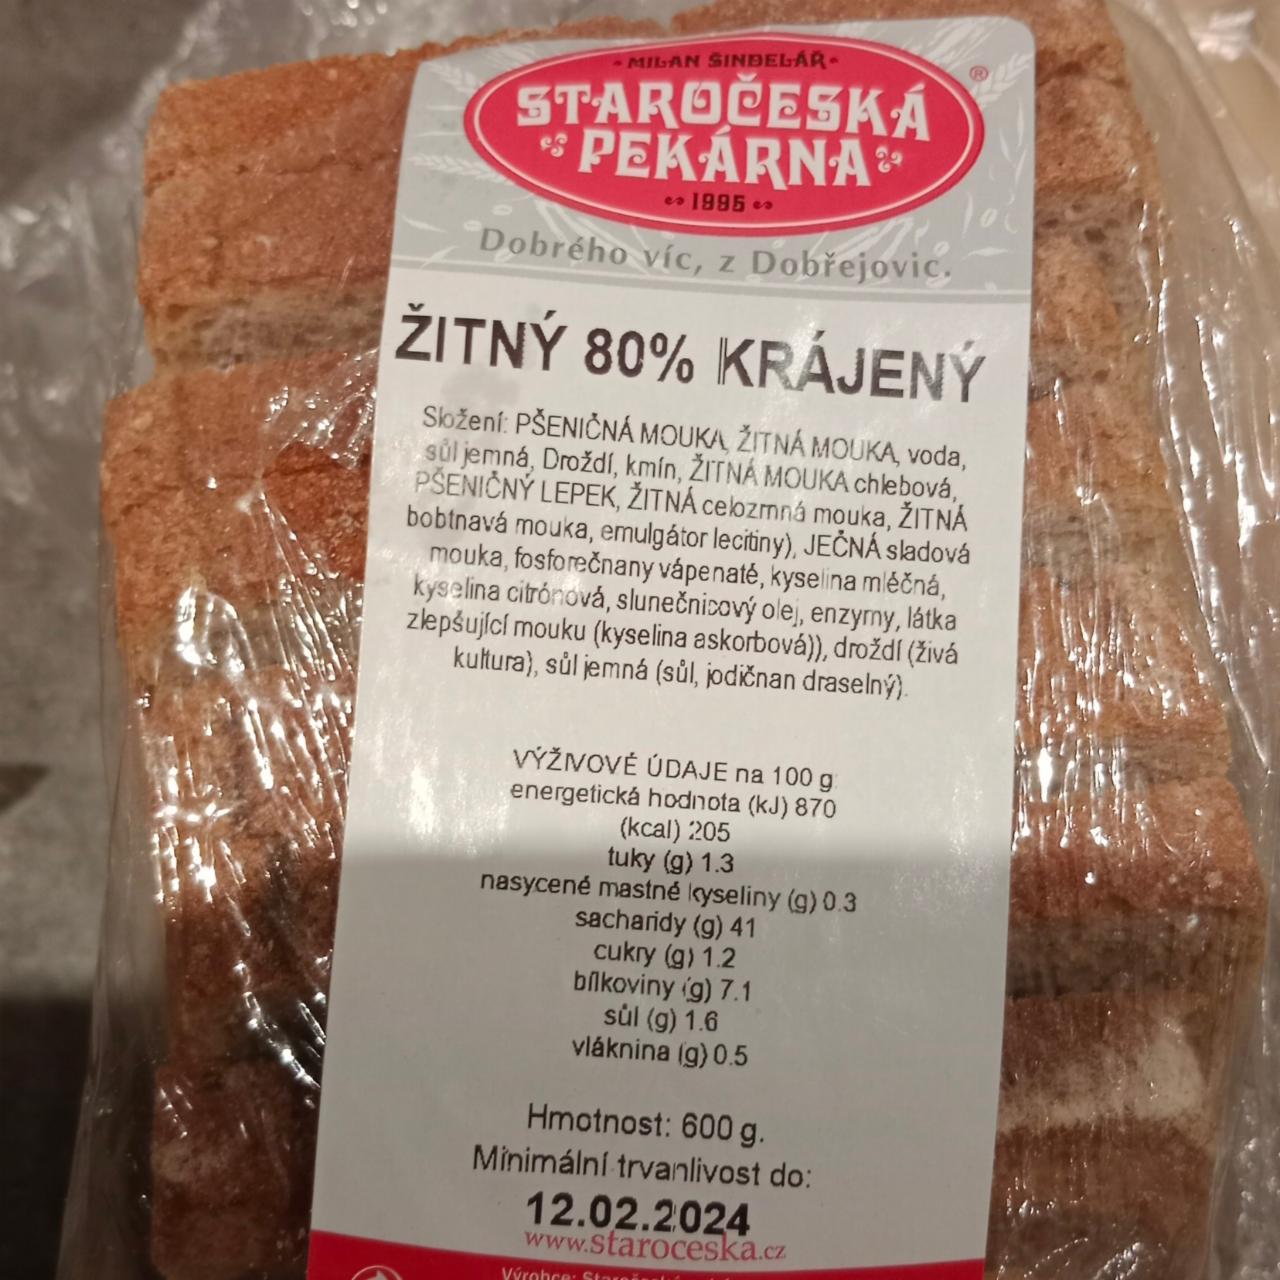 Fotografie - Žitný 80% krájený Staročeská pekárna